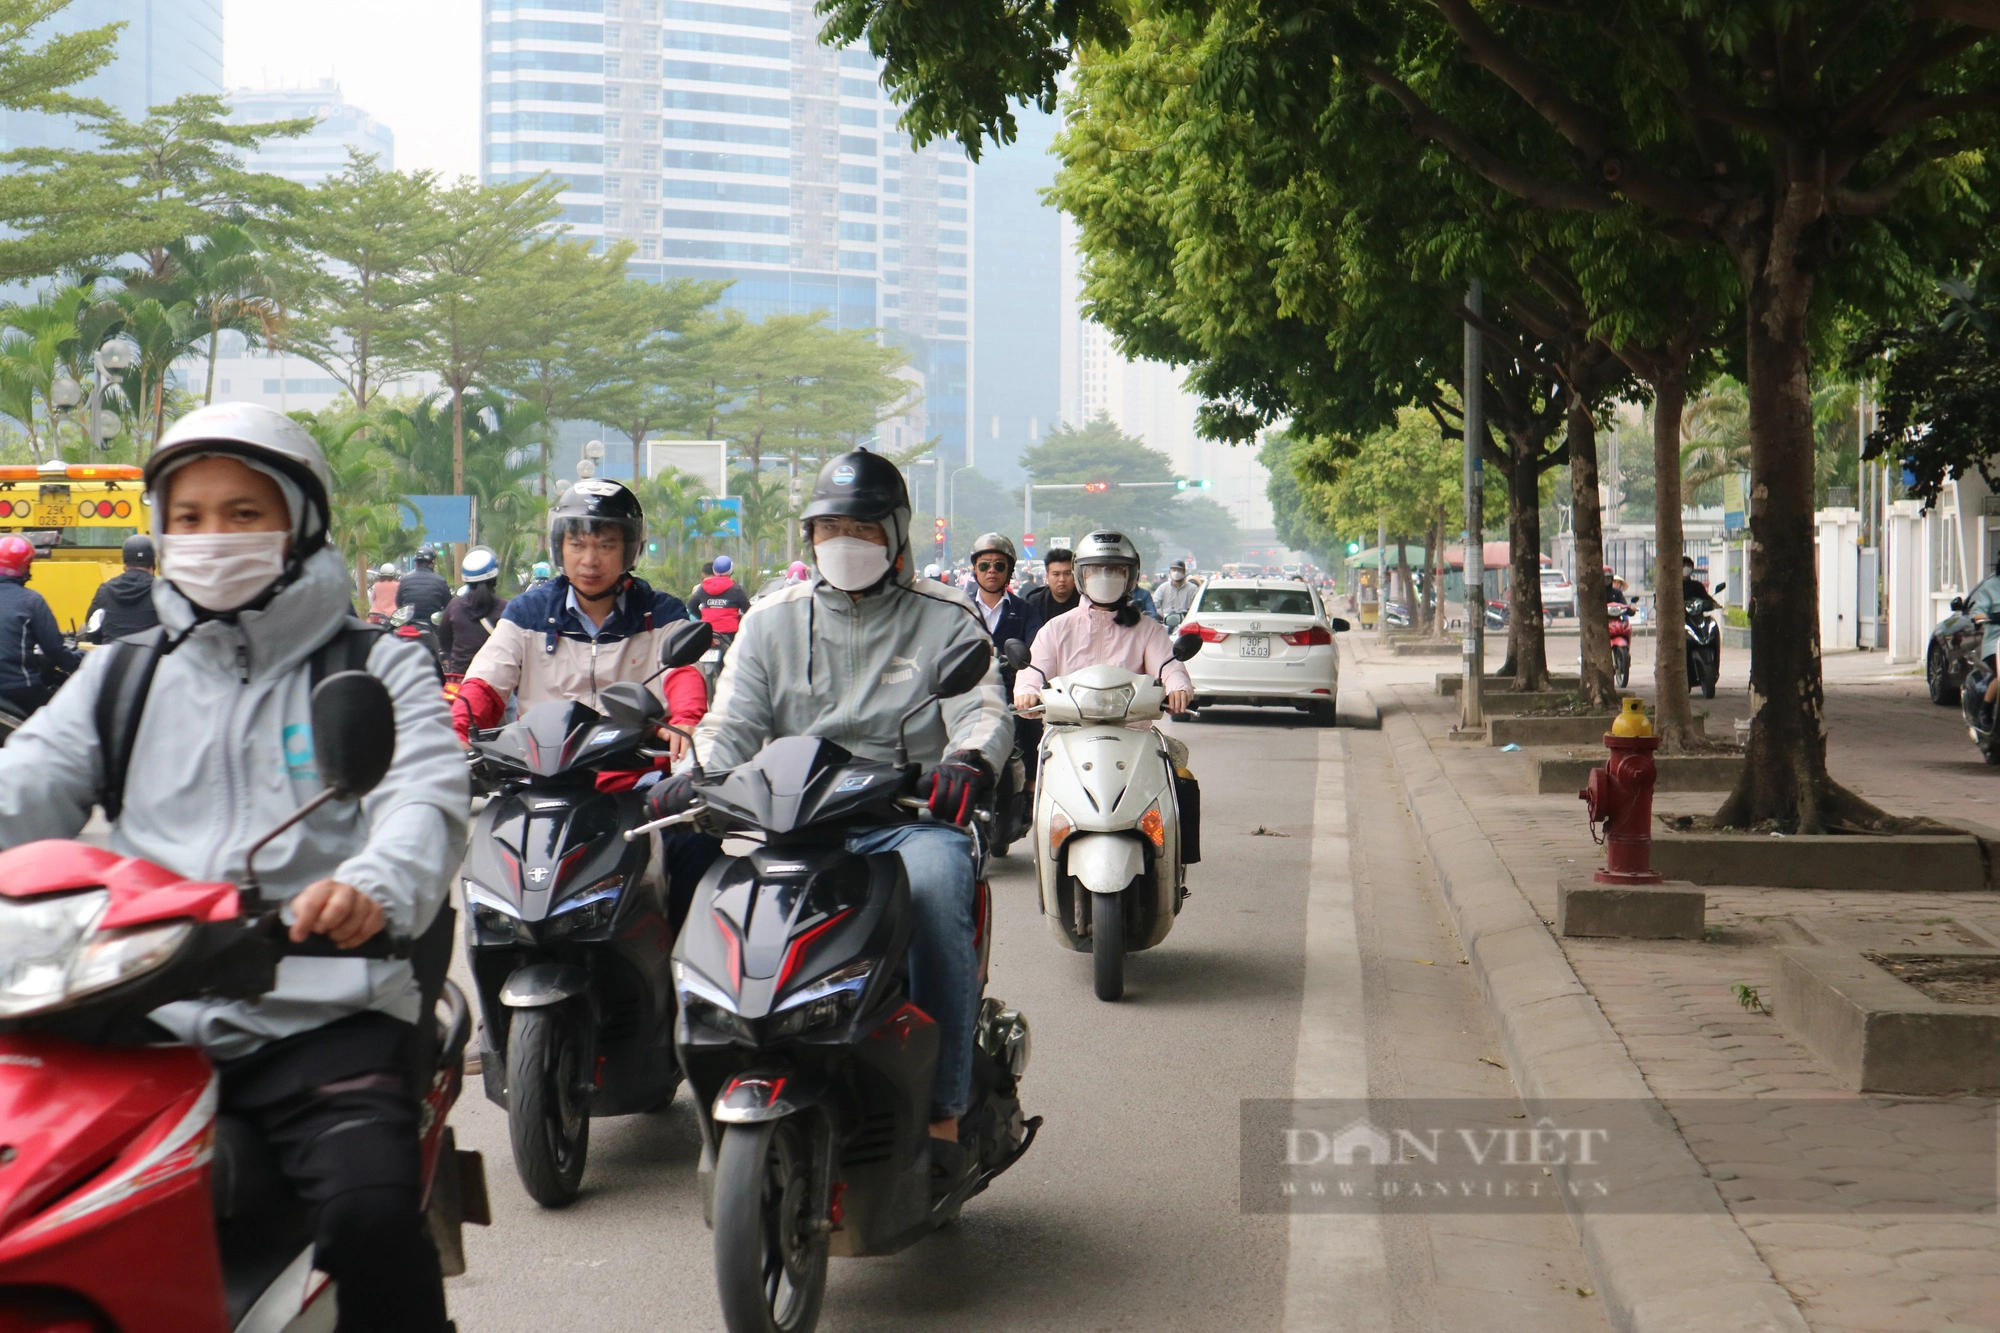  Xe máy lũ lượt đi ngược chiều trên đường Dương Đình Nghệ (quận Cầu Giấy) - Ảnh 2.